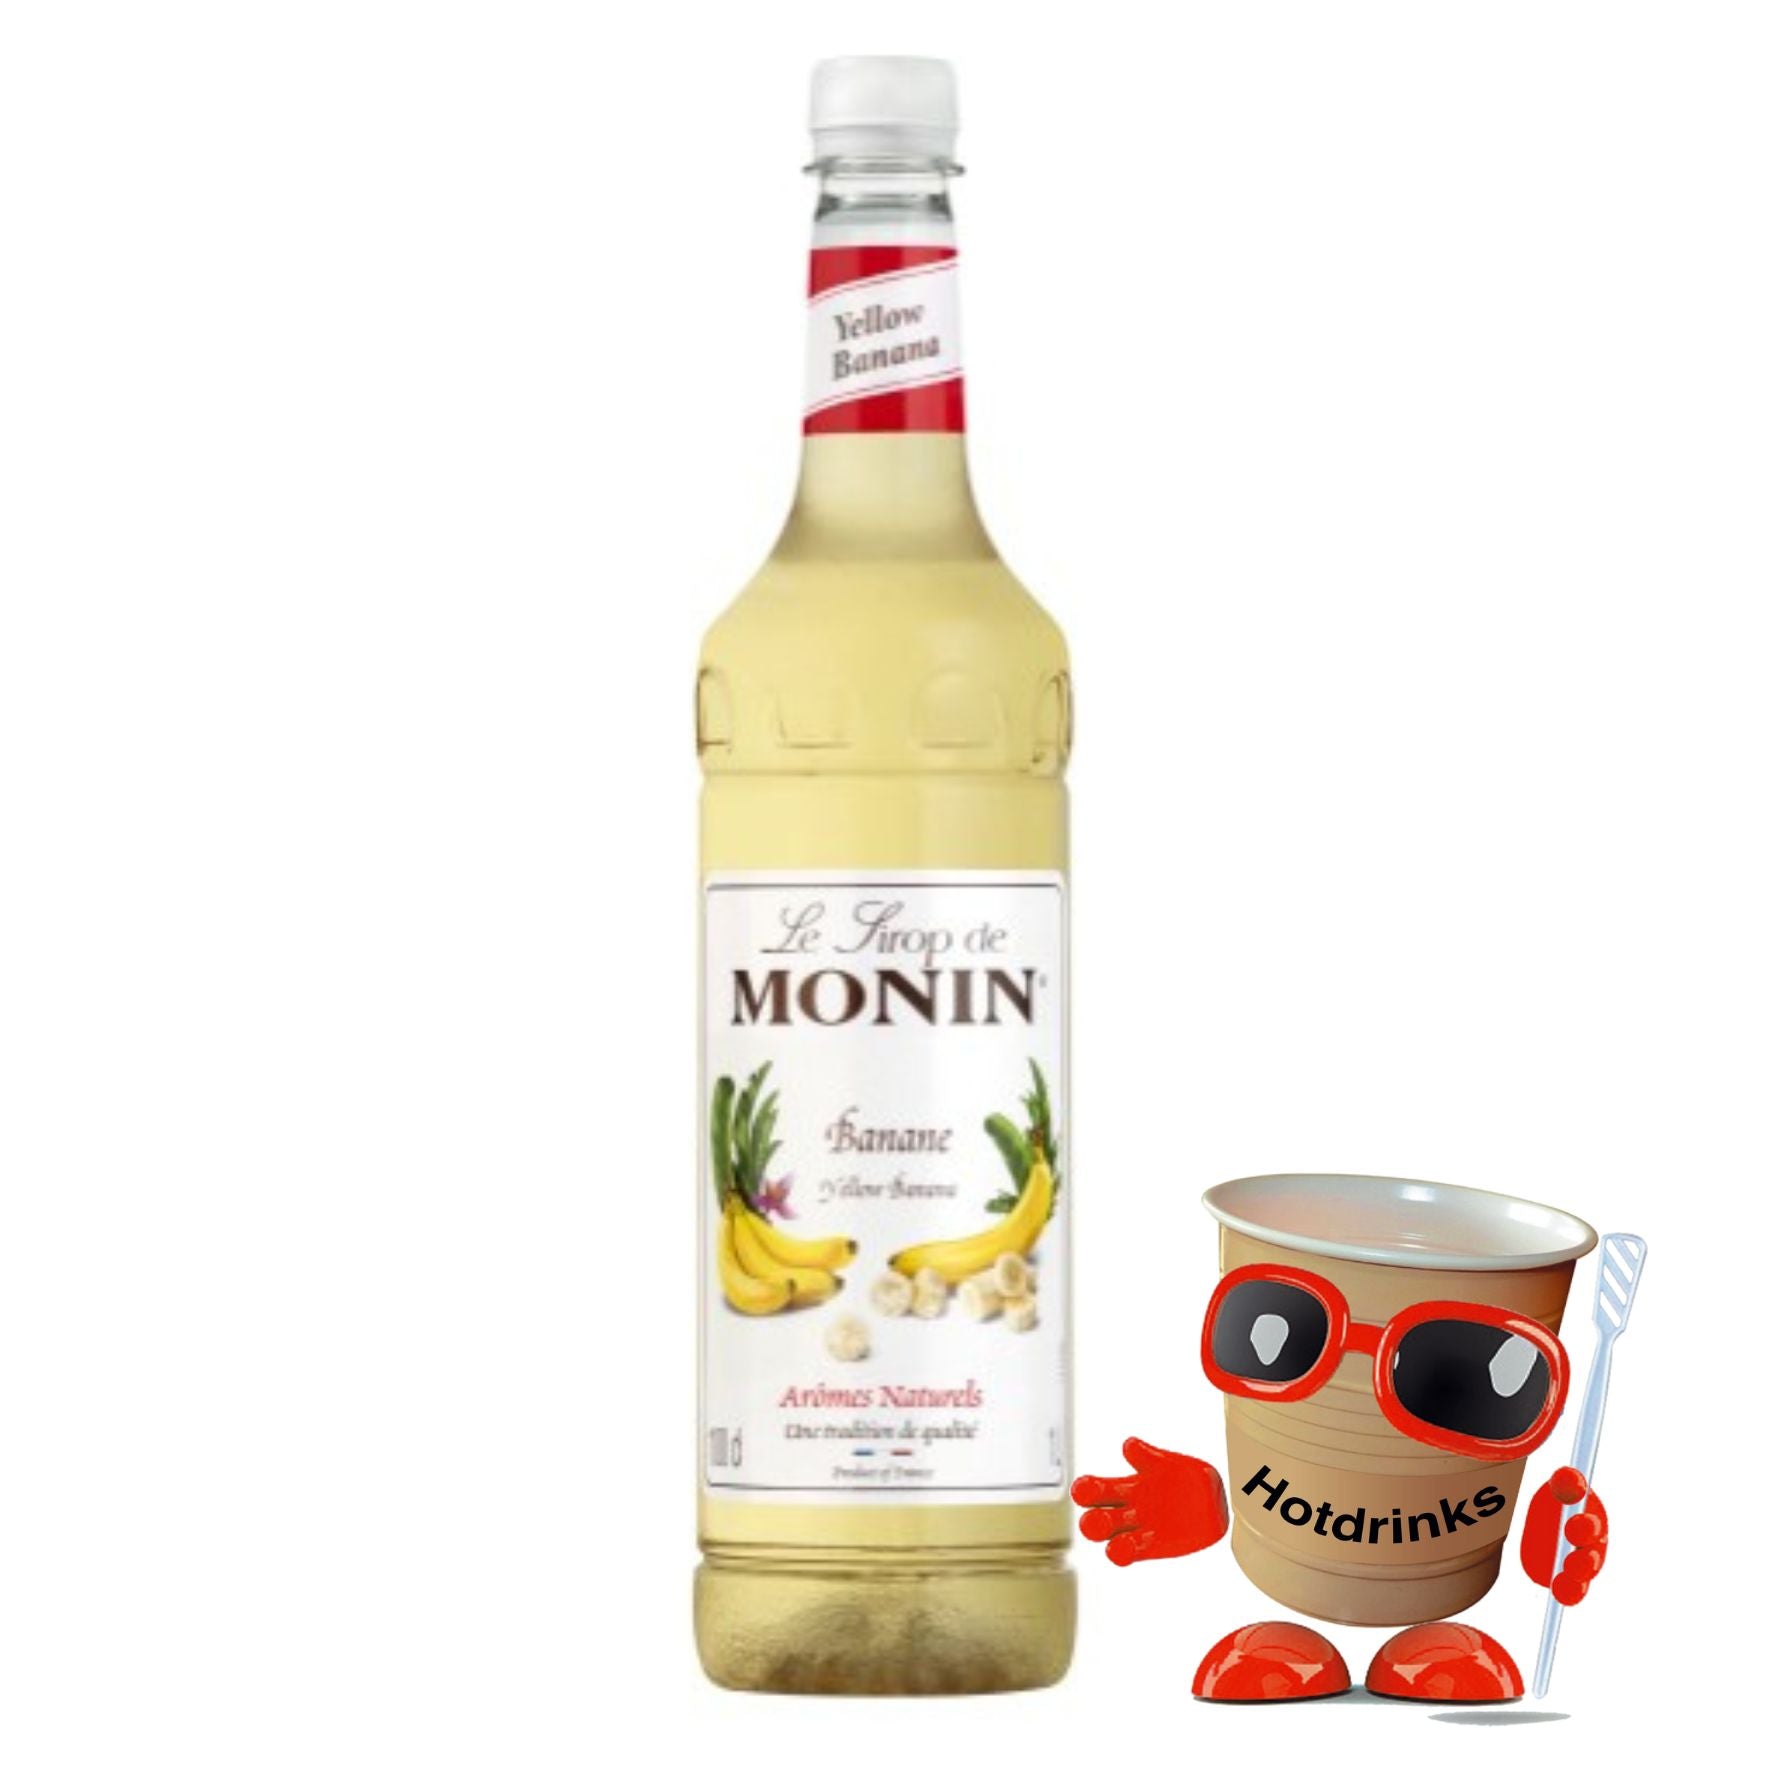 Monin Syrups - Multiple Flavours (1 or 6 x 1Ltr Bottles)